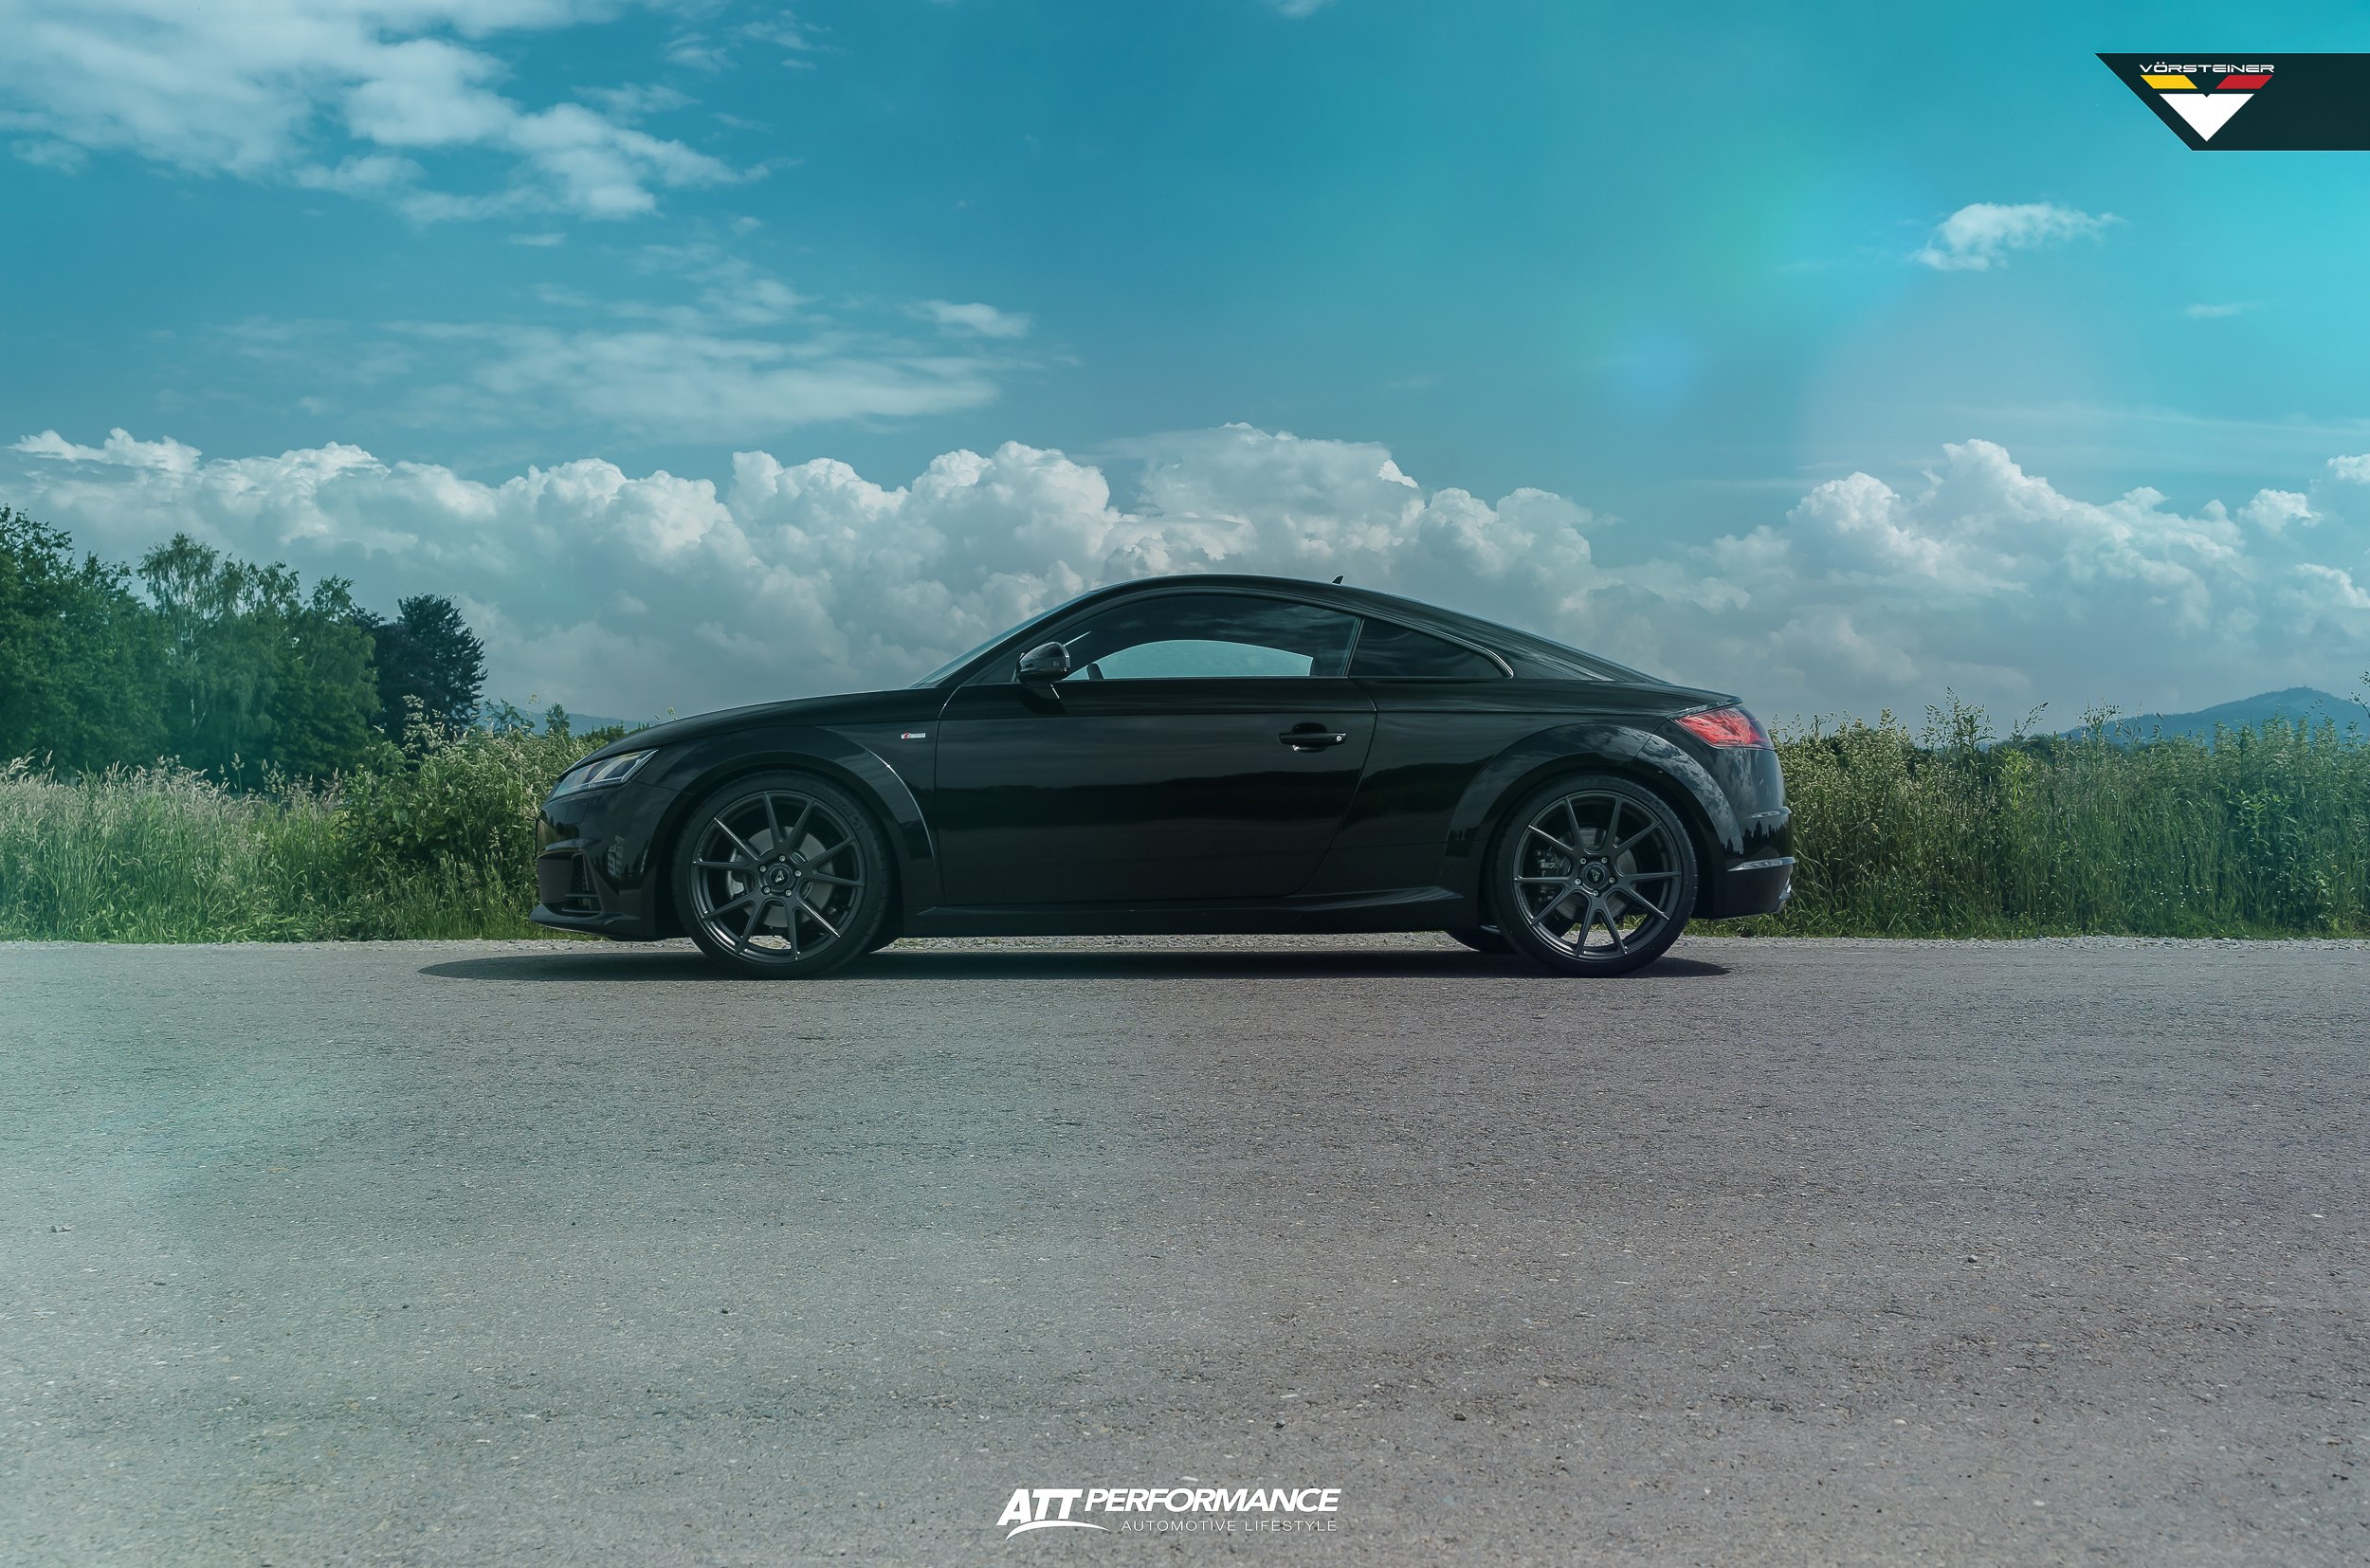 Black Audi TT with Custom Vorsteiner Wheels - Photo by Vorstiner